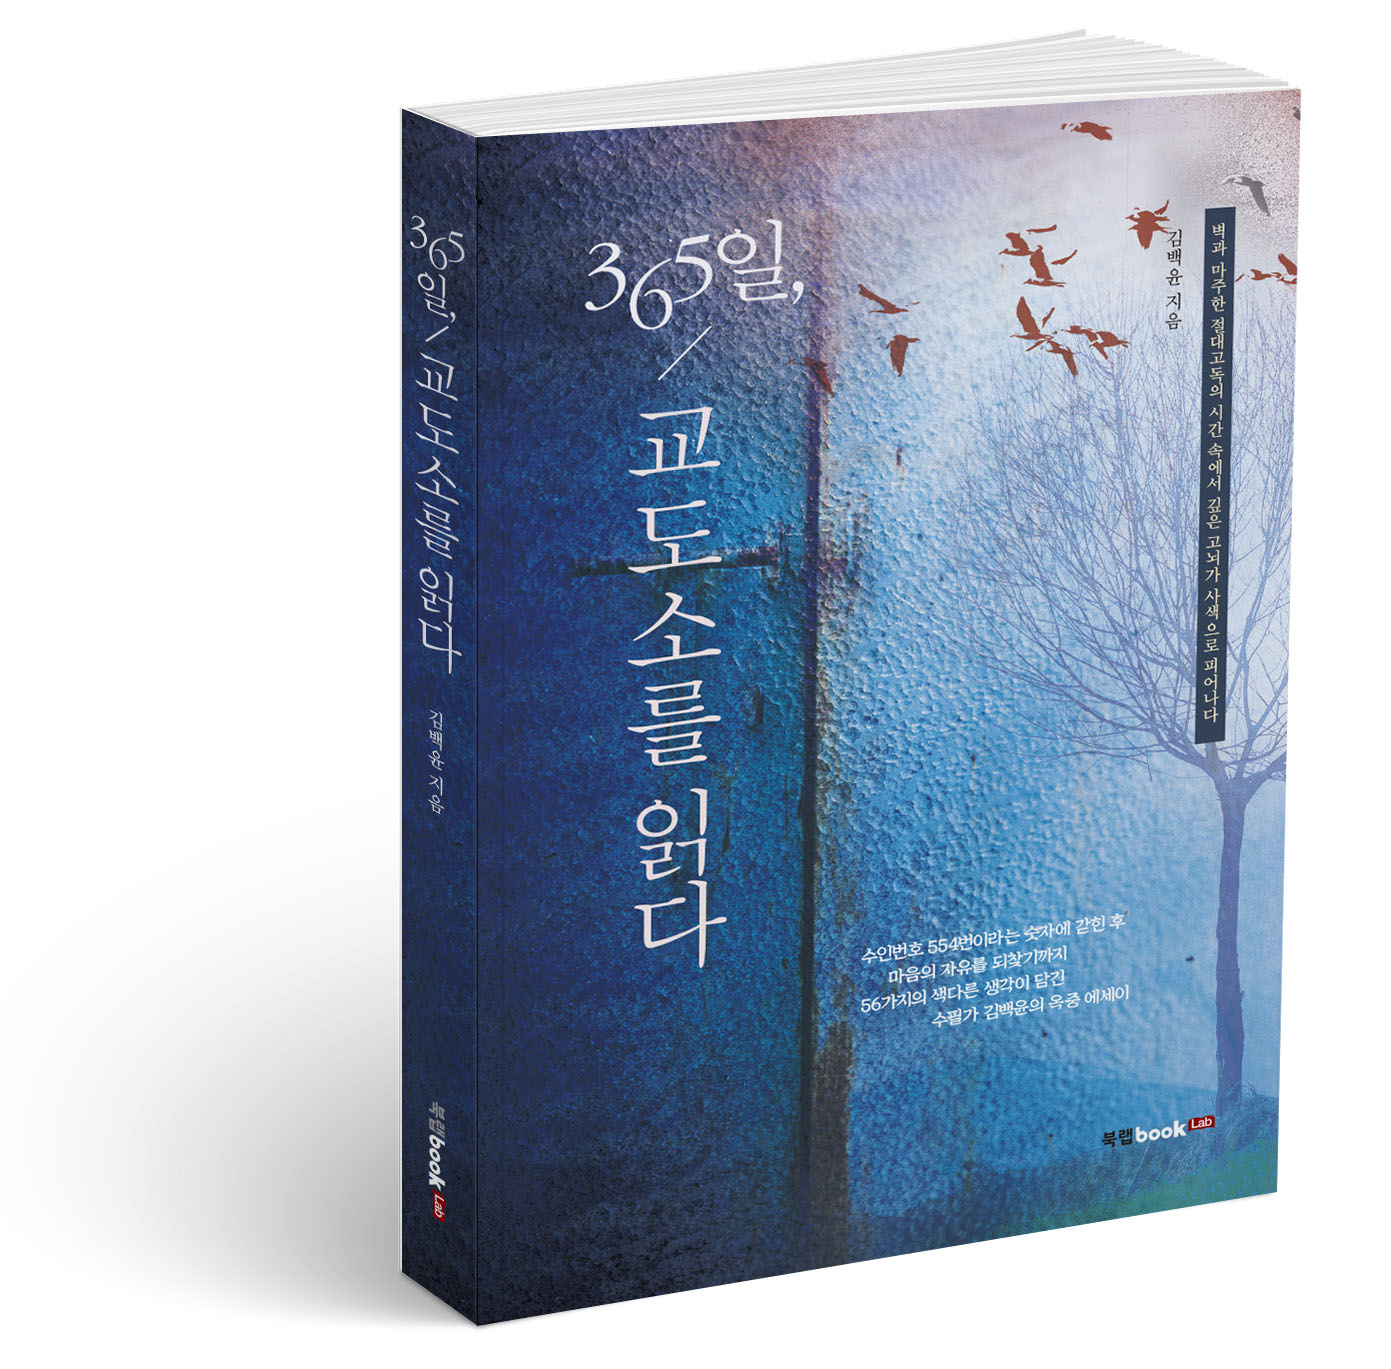 북랩, 수필가 김백윤의 옥중 생활 담은 에세이 ‘365일, 교도소를 읽다’ 출간